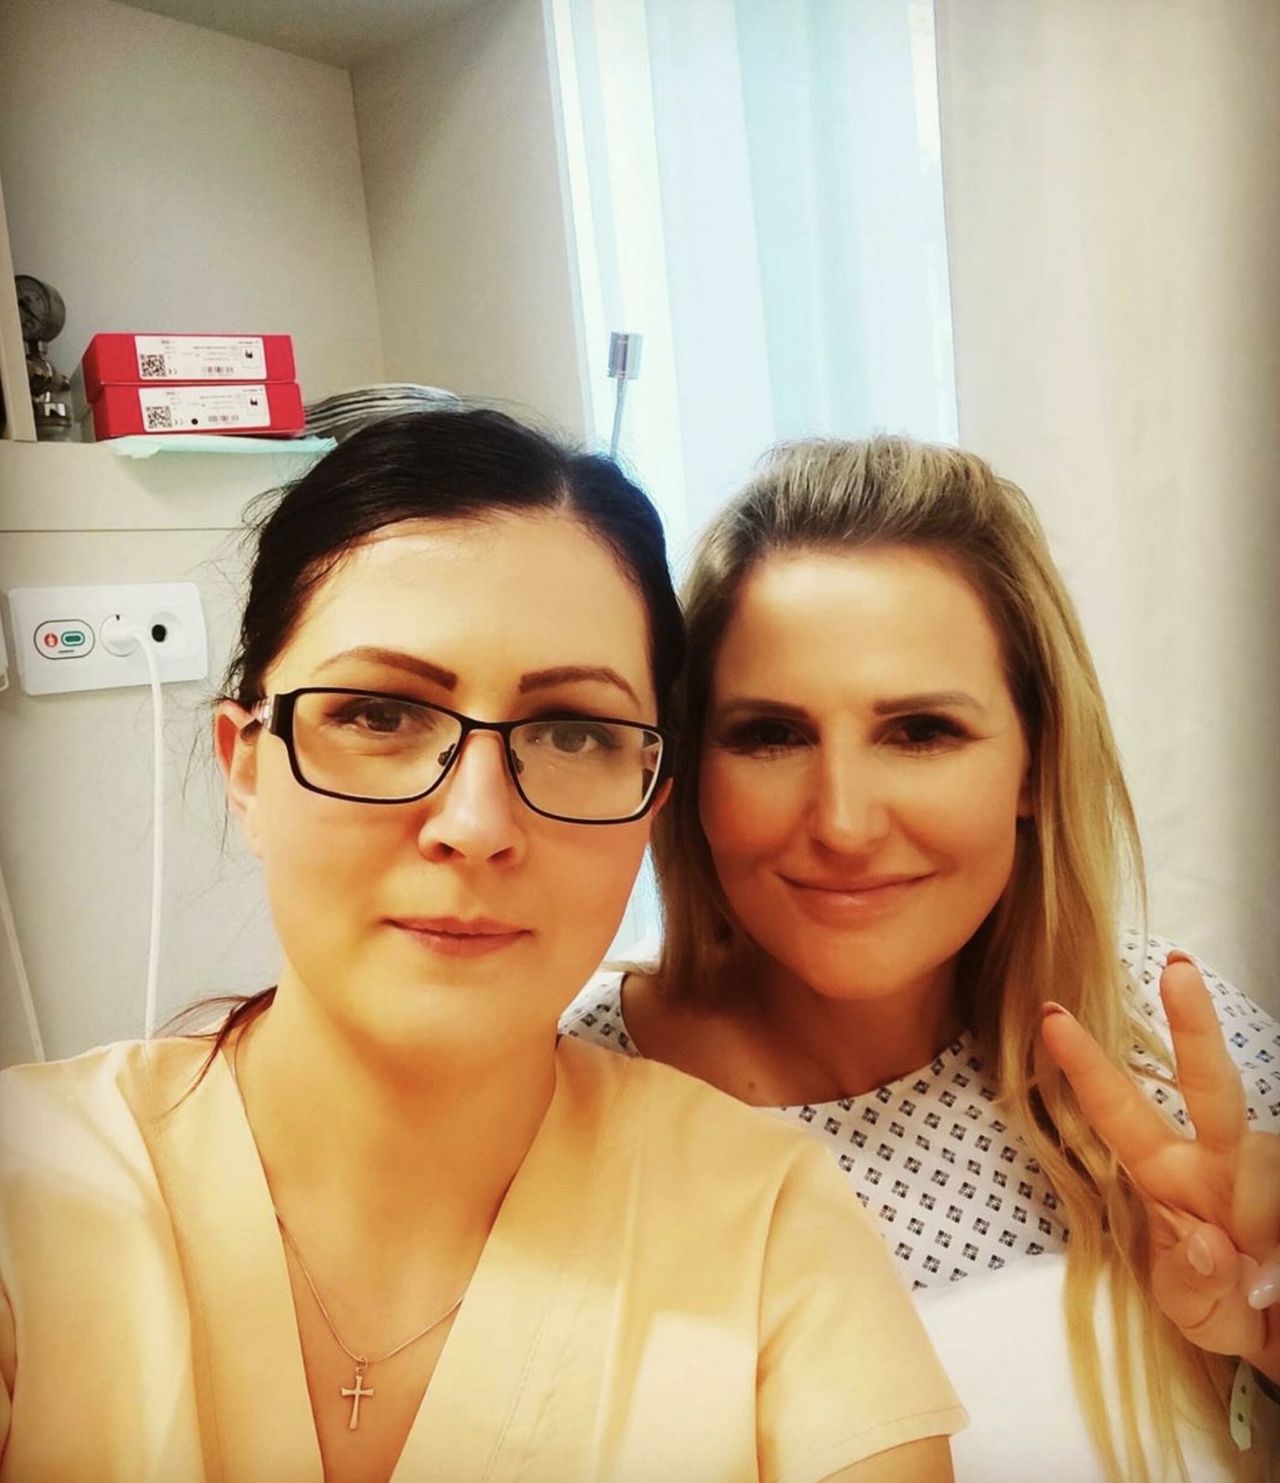 Dominika Tajner po operacji piersi | fot. Instagram.com/dominika_tajner